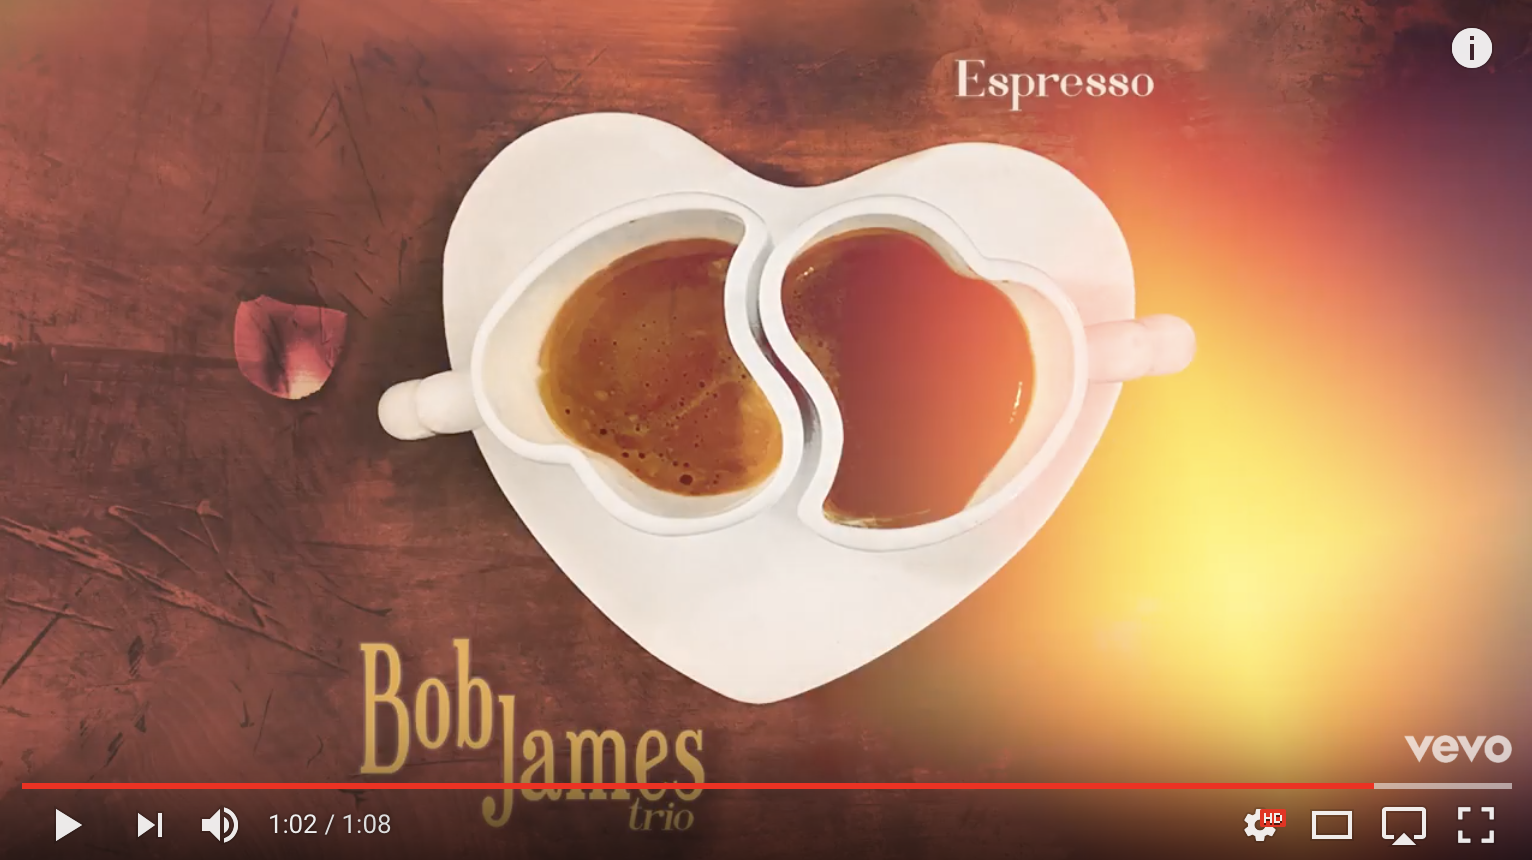 Bob James - Espresso